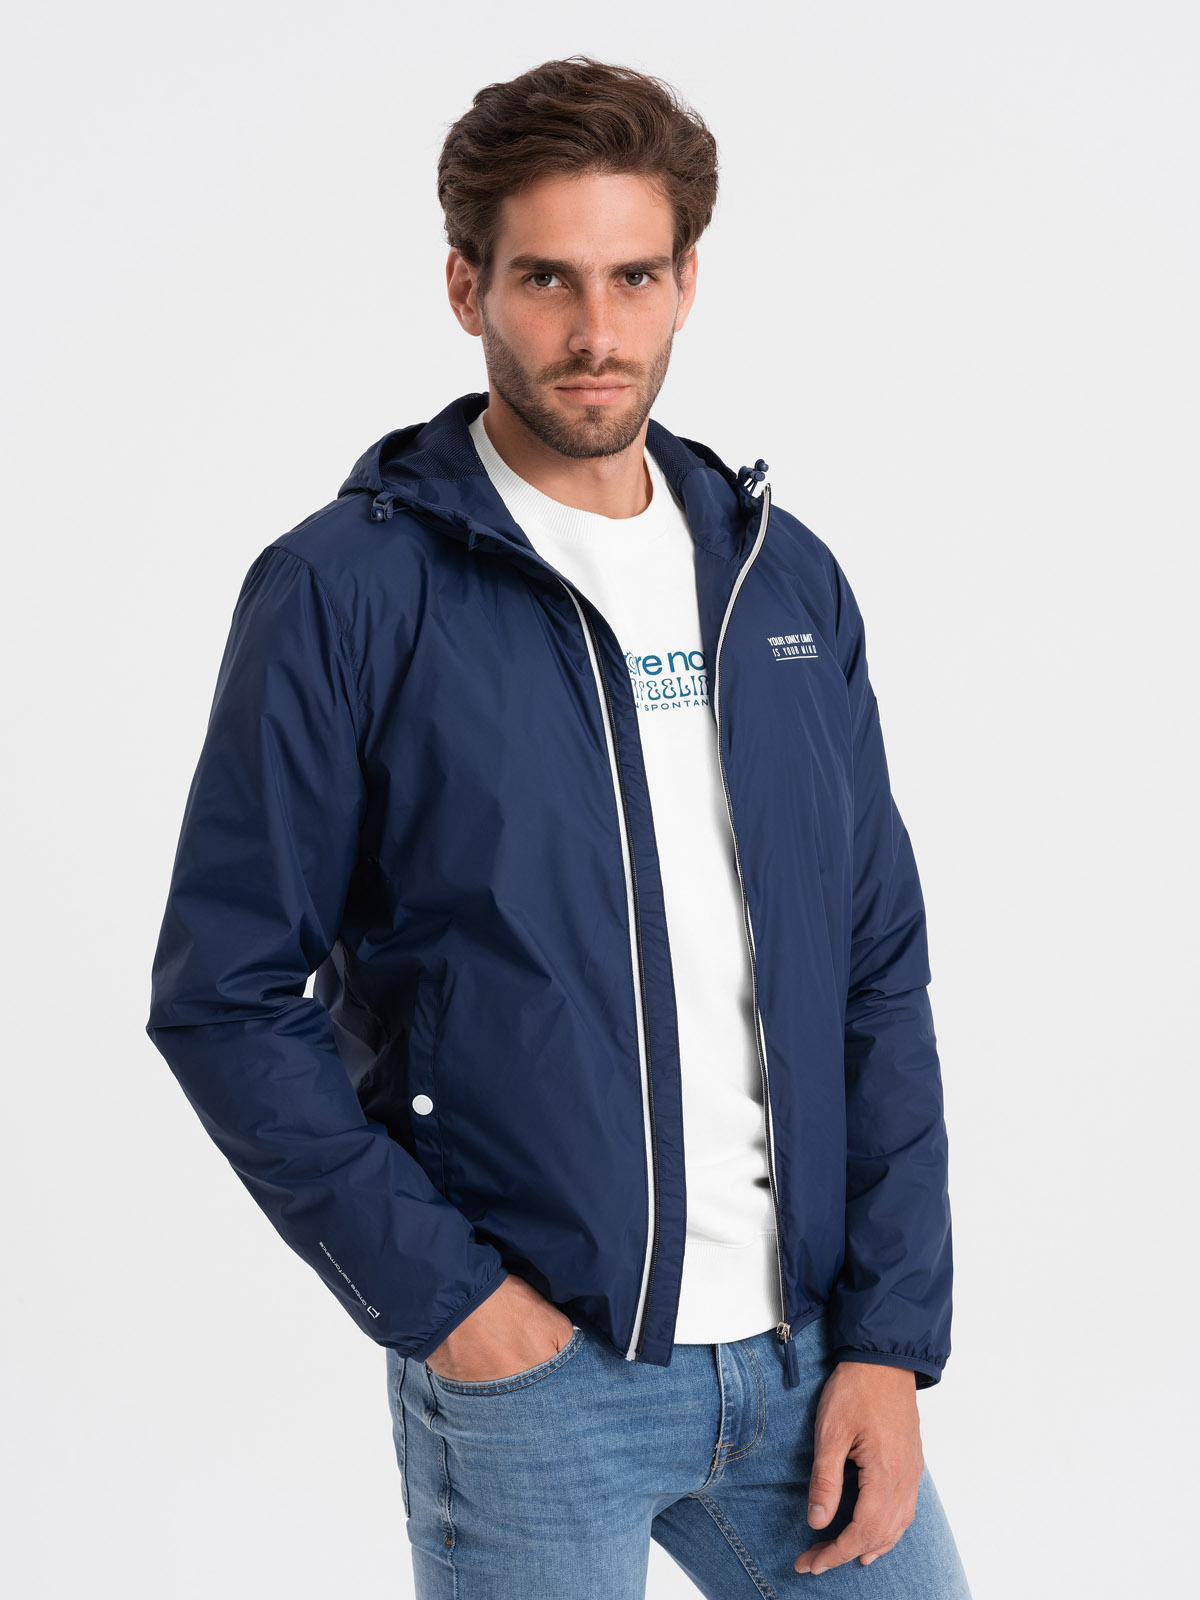 Men's windbreaker jacket with hood and contrasting details - navy blue V6  OM-JANP-0110